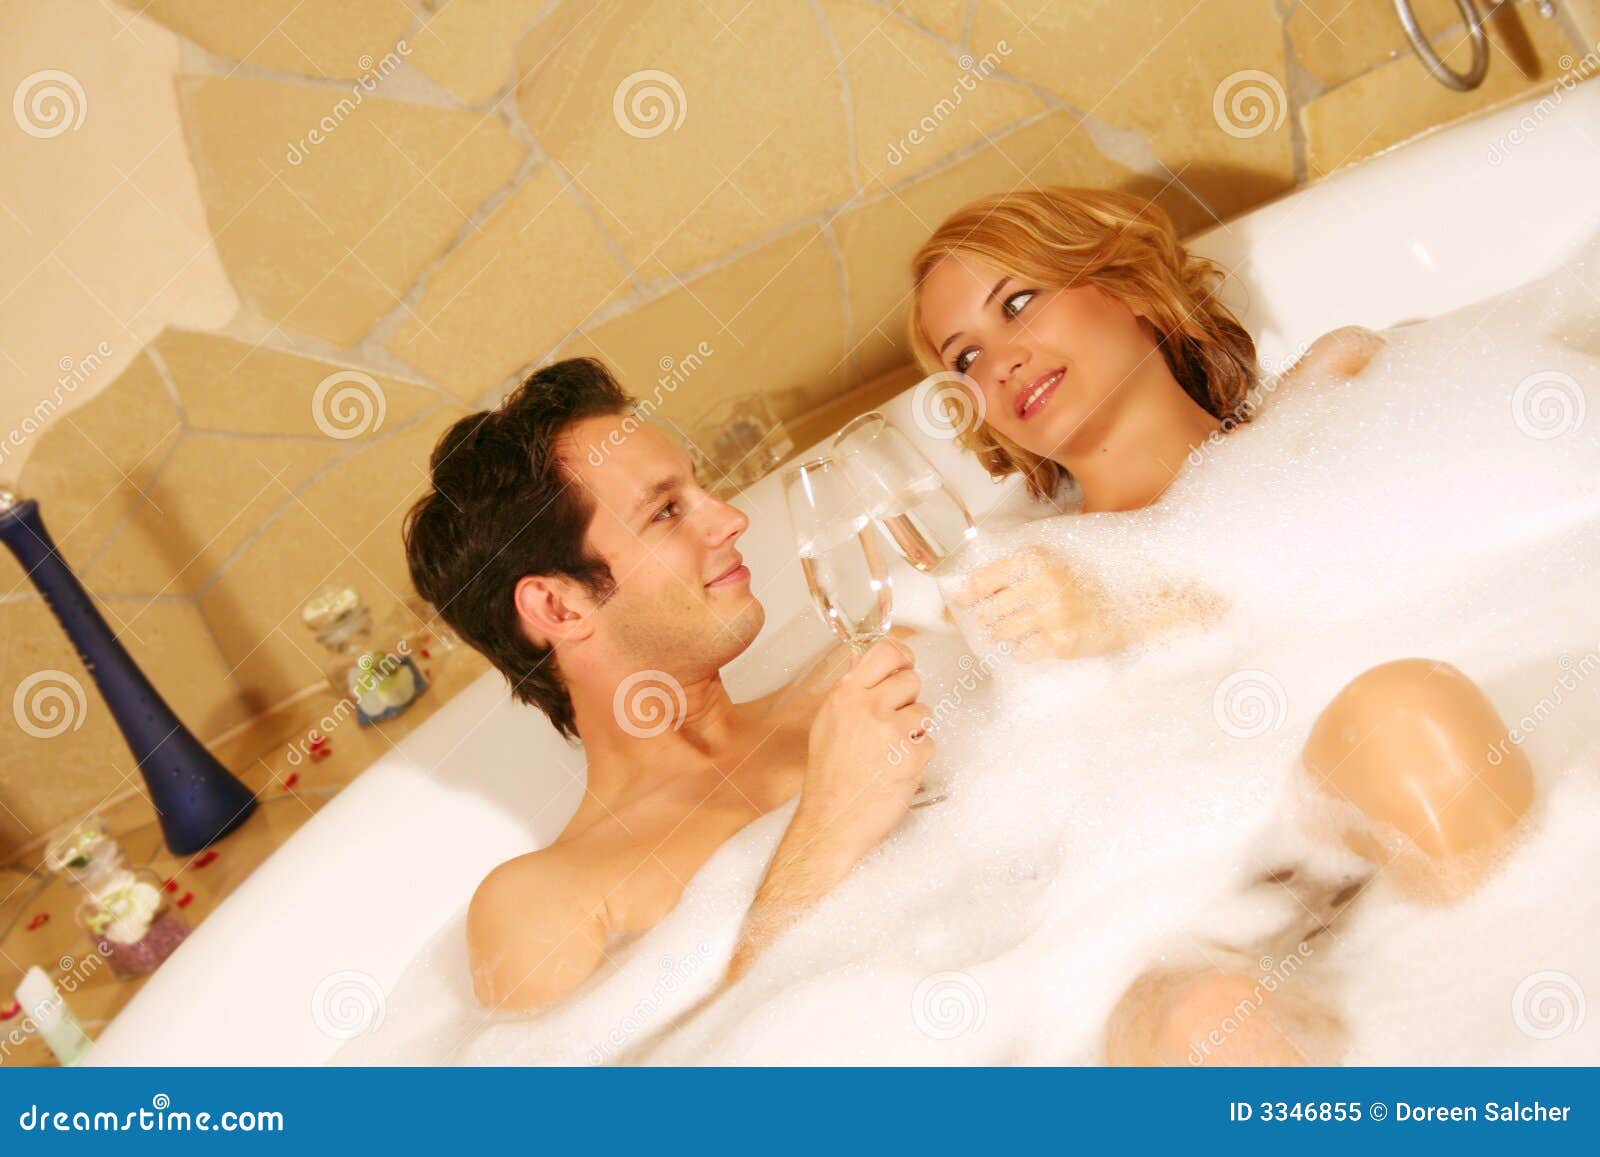 С женой друга в ванне. Семейные пары в ванной. Подростковая пара в ванной. Супружеская пара в ванной. Молодая парочка в ванной.